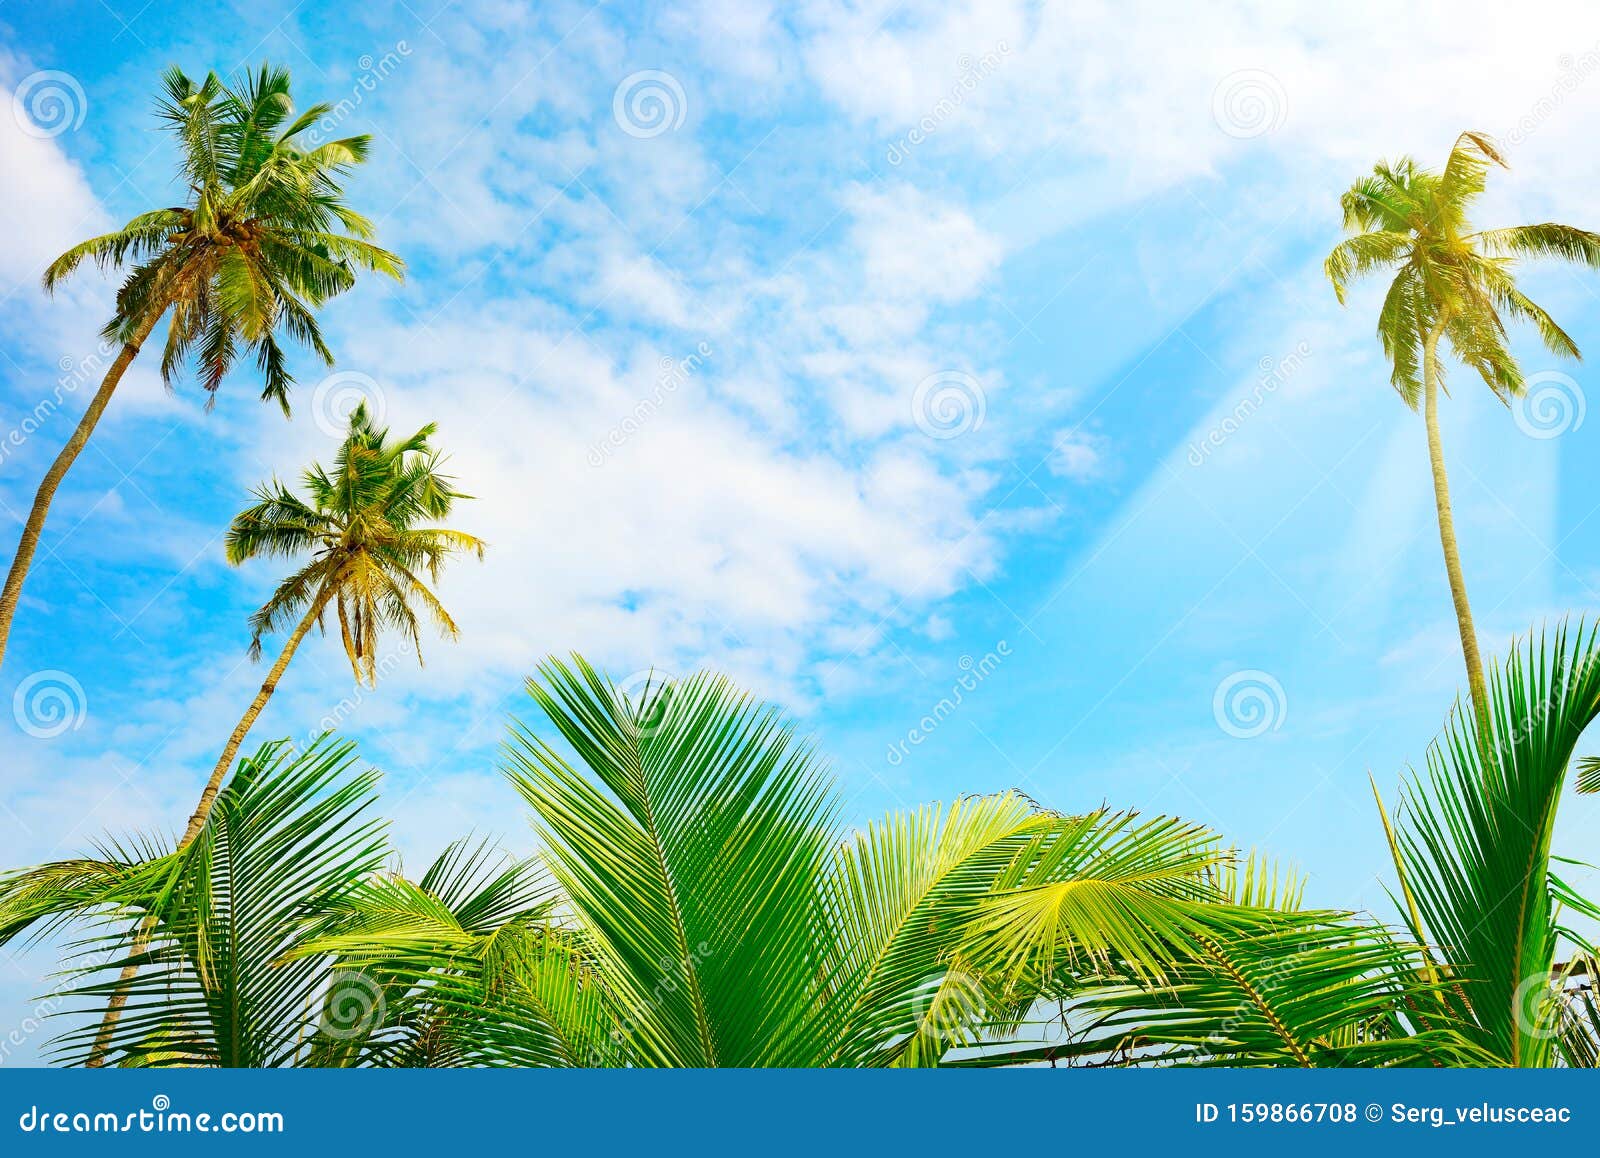 Cây dừa: Hình ảnh của những hàng cây dừa đang lay động trong gió sẽ khiến bạn có cảm giác như đang đứng dưới một ánh nắng rực rỡ và gió mát nhẹ nhàng. Cây dừa được xem là biểu tượng của miền nhiệt đới, mang lại cho bạn nét đẹp tinh khiết và thanh bình của một thế giới phong phú.